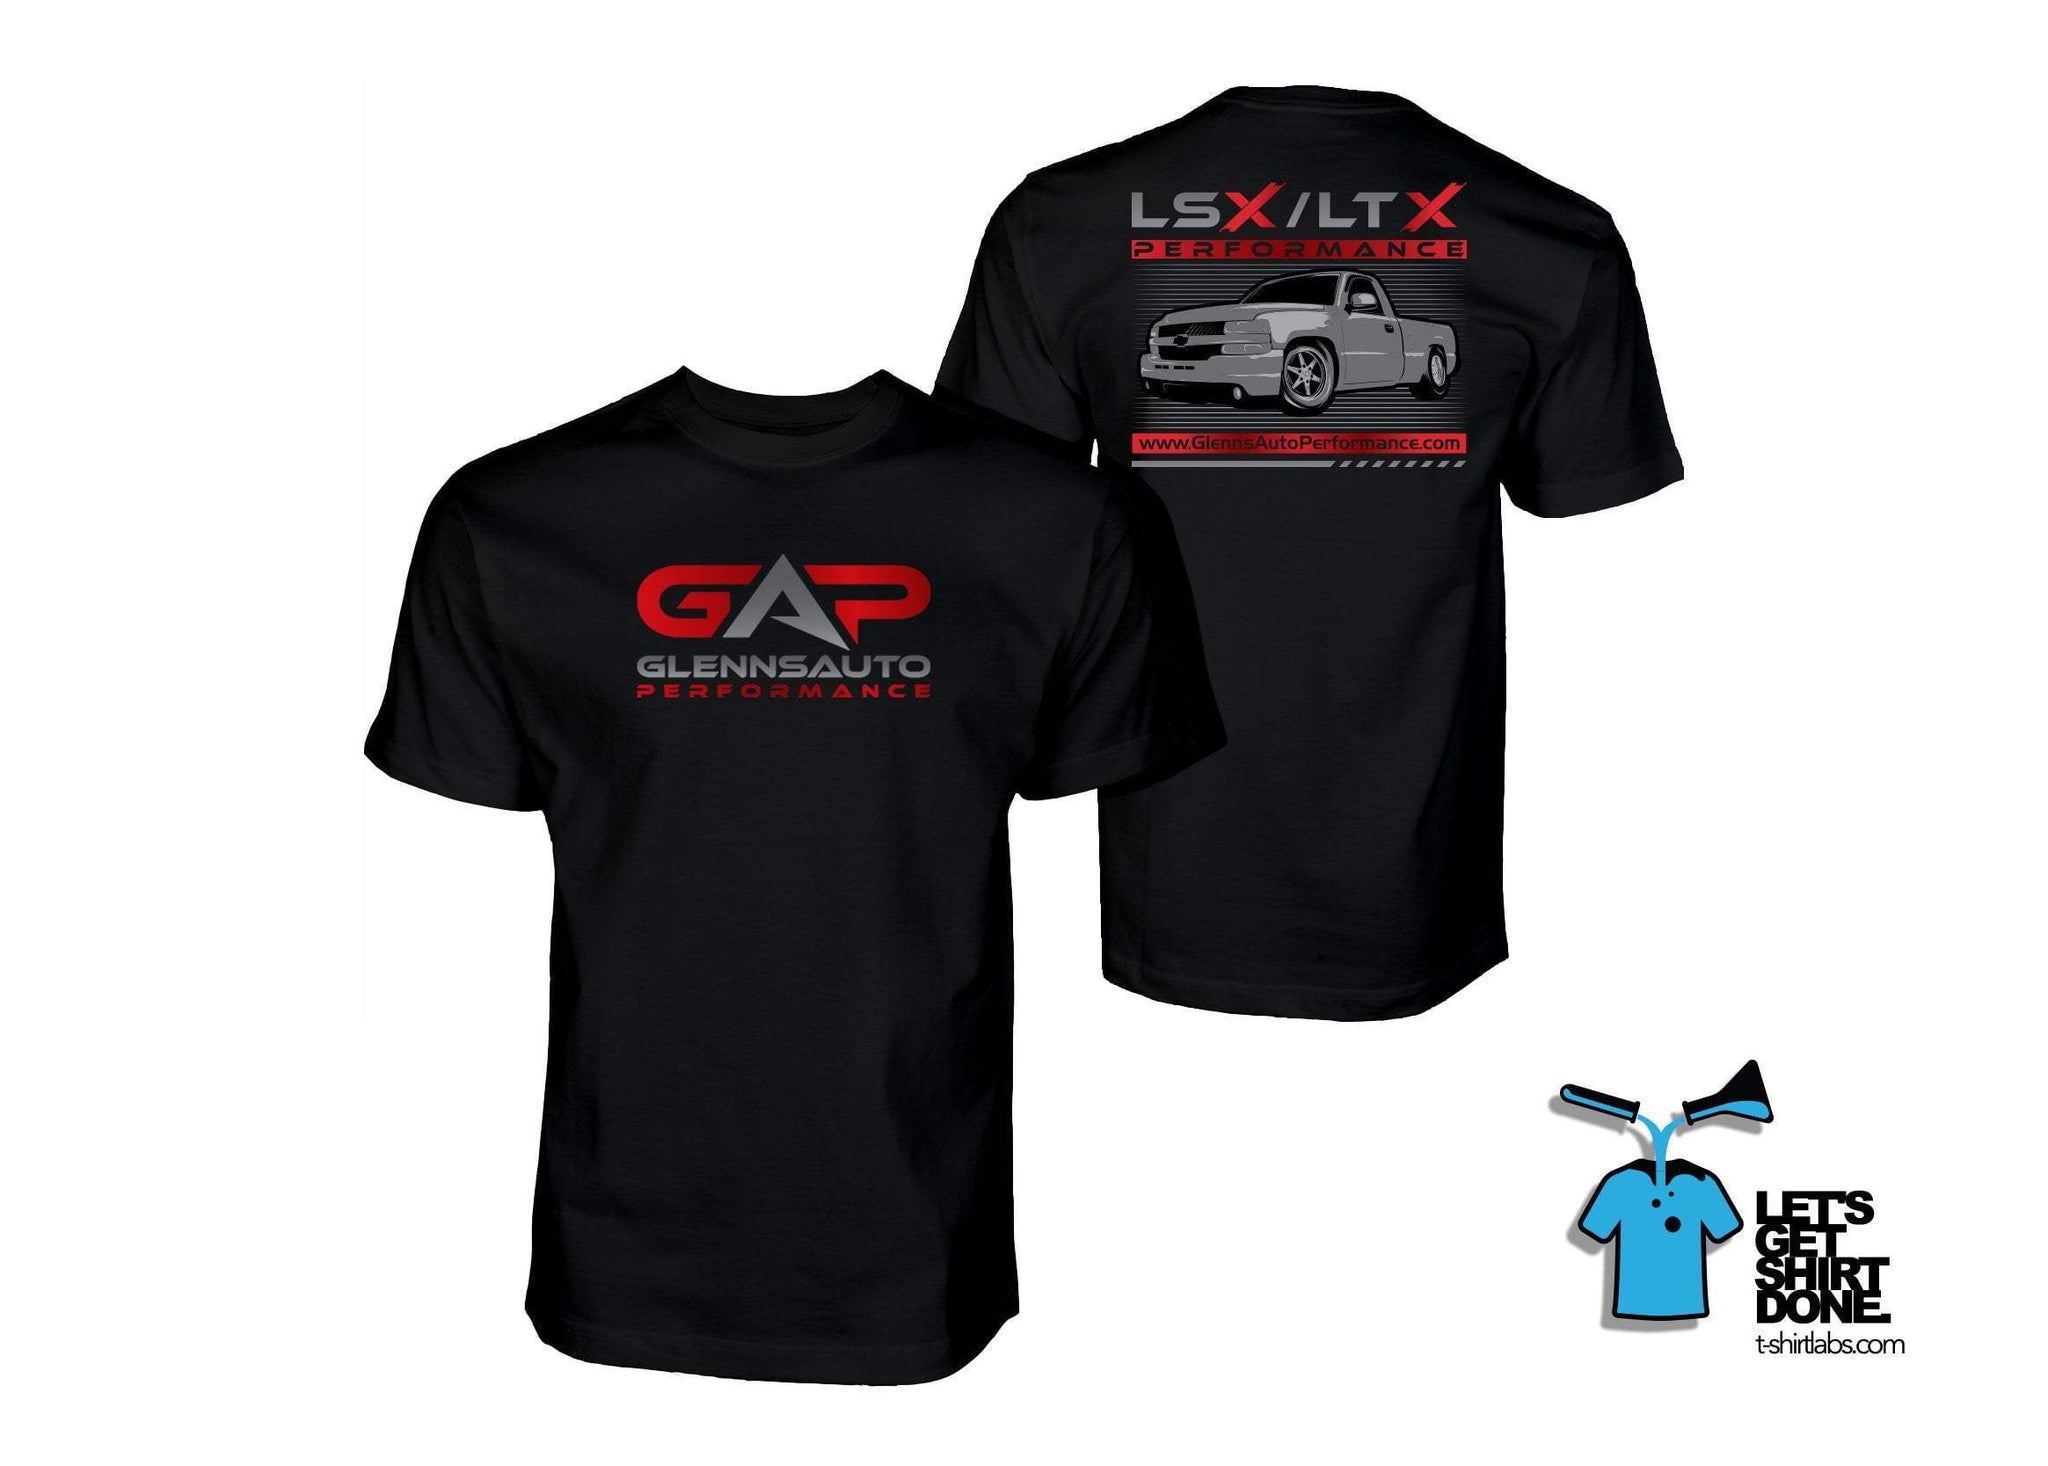 GAP LSx/LTx Truck T-Shirt (Black)